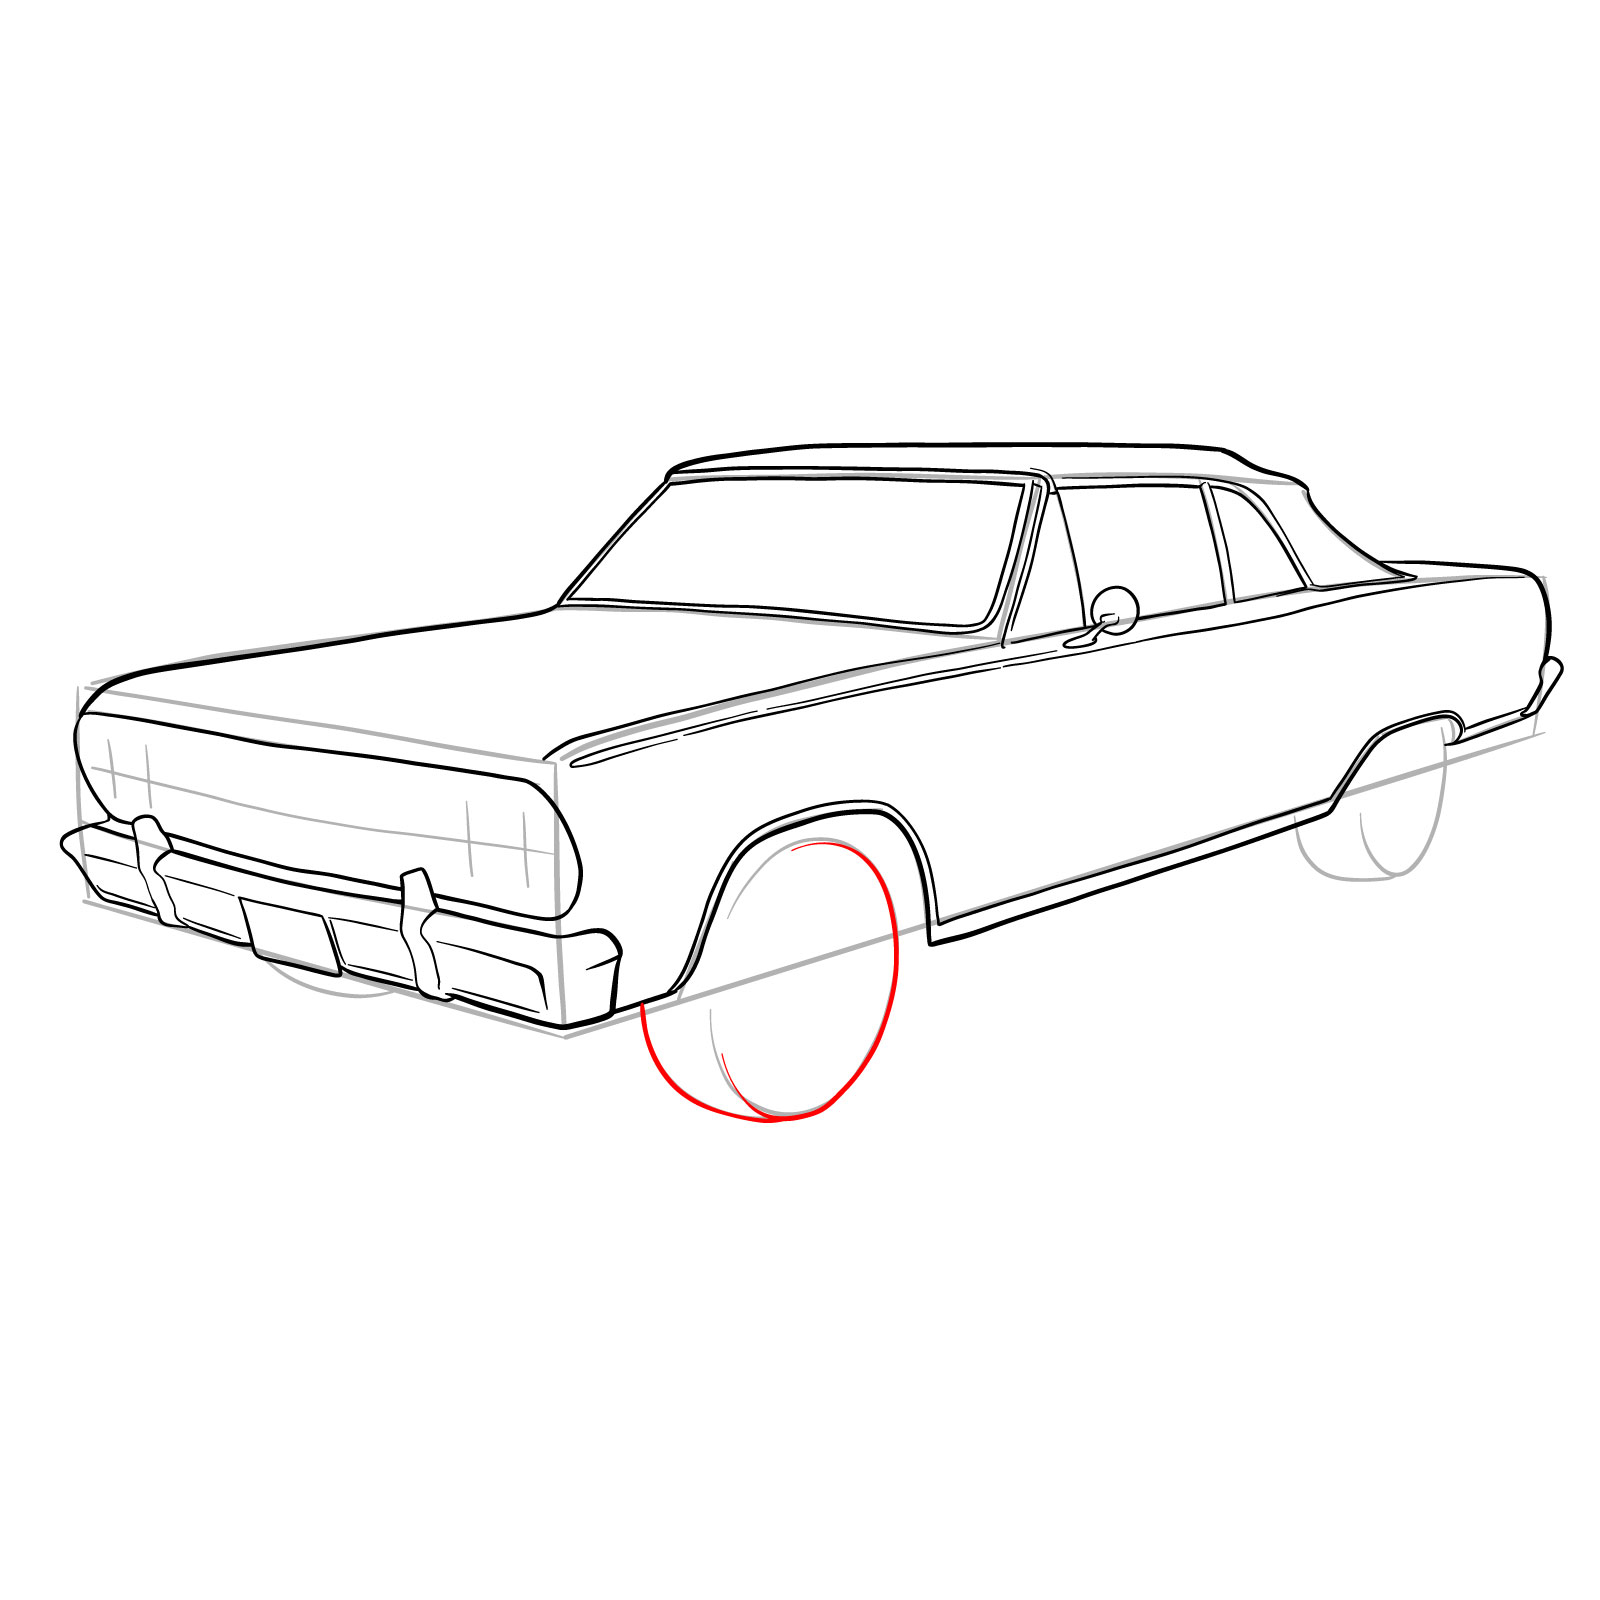 How to draw 1964 Chevrolet Malibu - step 24